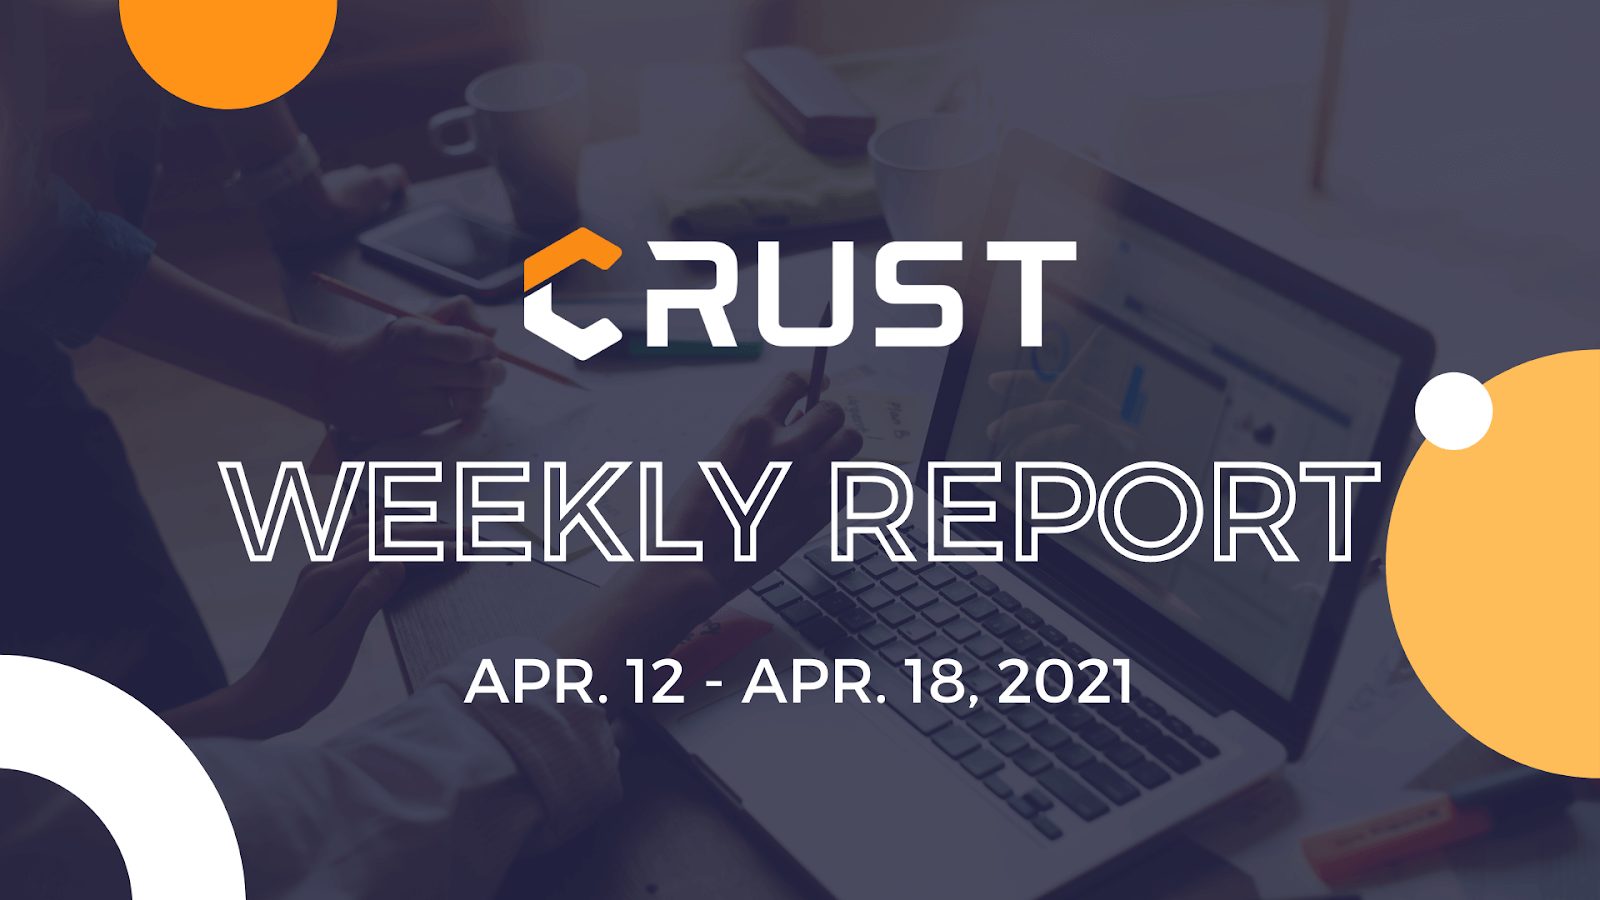 Crust Development Weekly Report